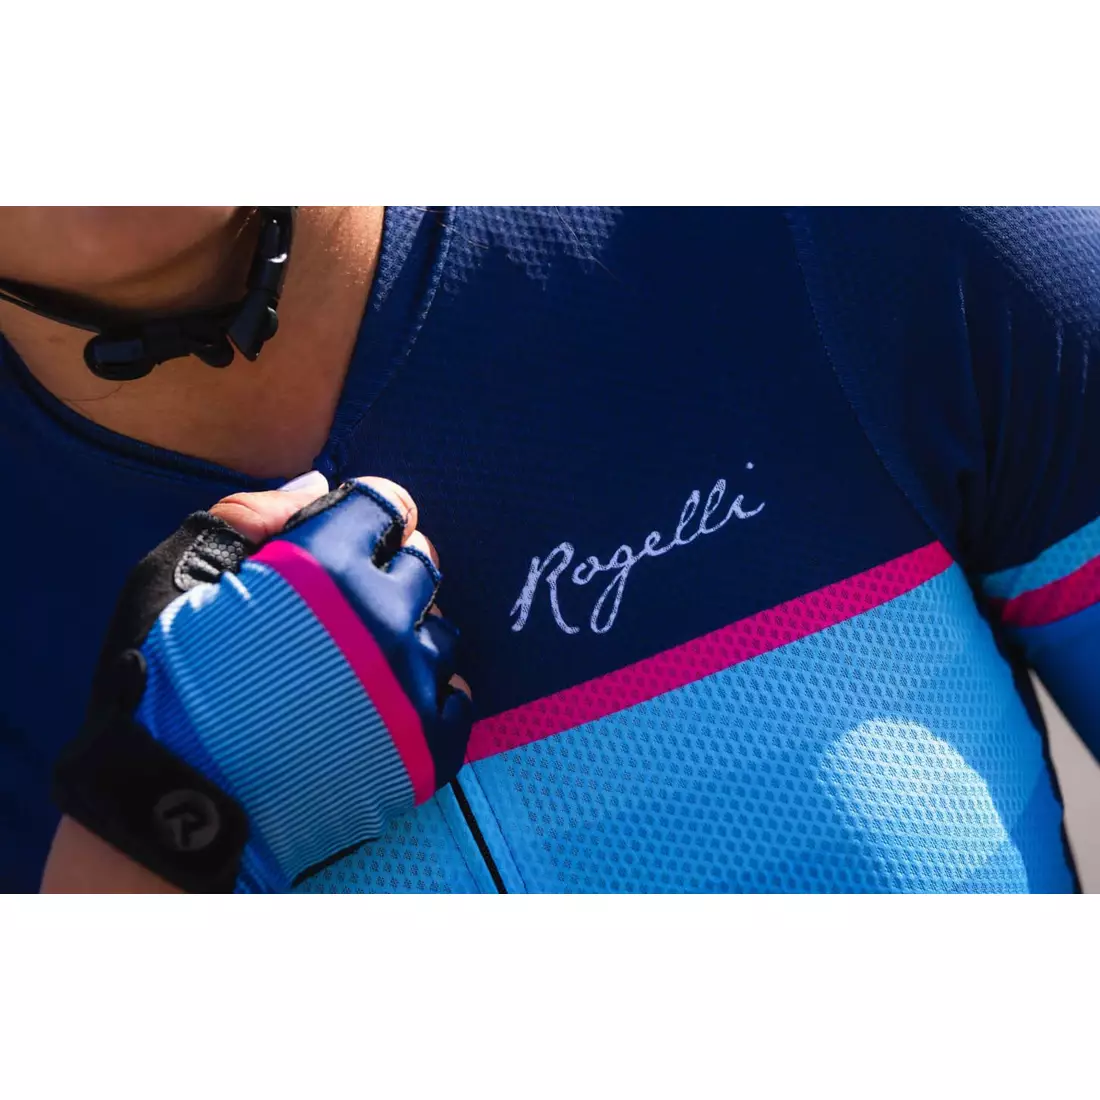 Rogelli IMPRESS II tricou de ciclism pentru femei, albastru-roz